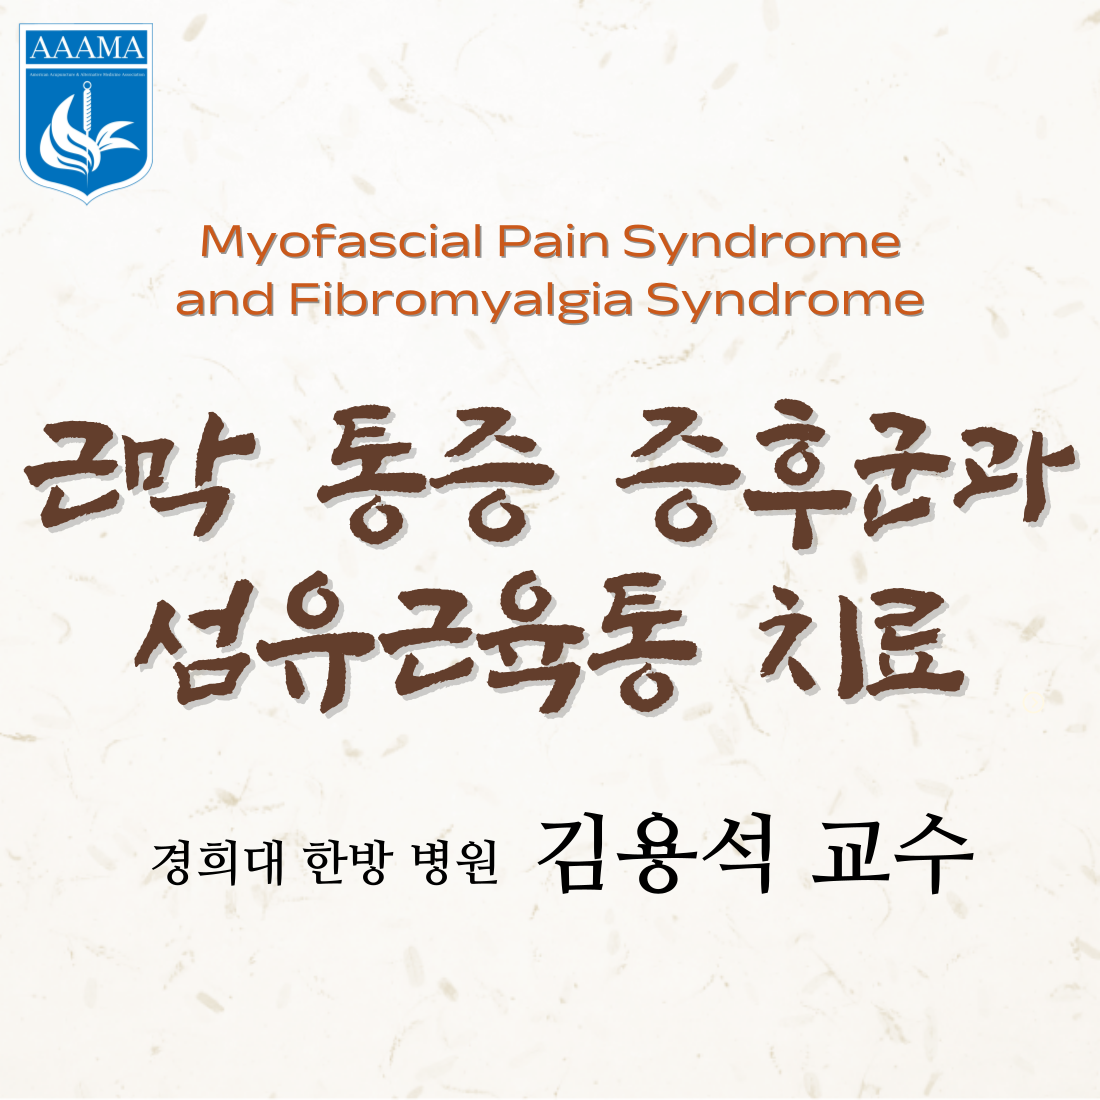 Myofascial Pain Syndrome and Fibromyalgia Syndrome